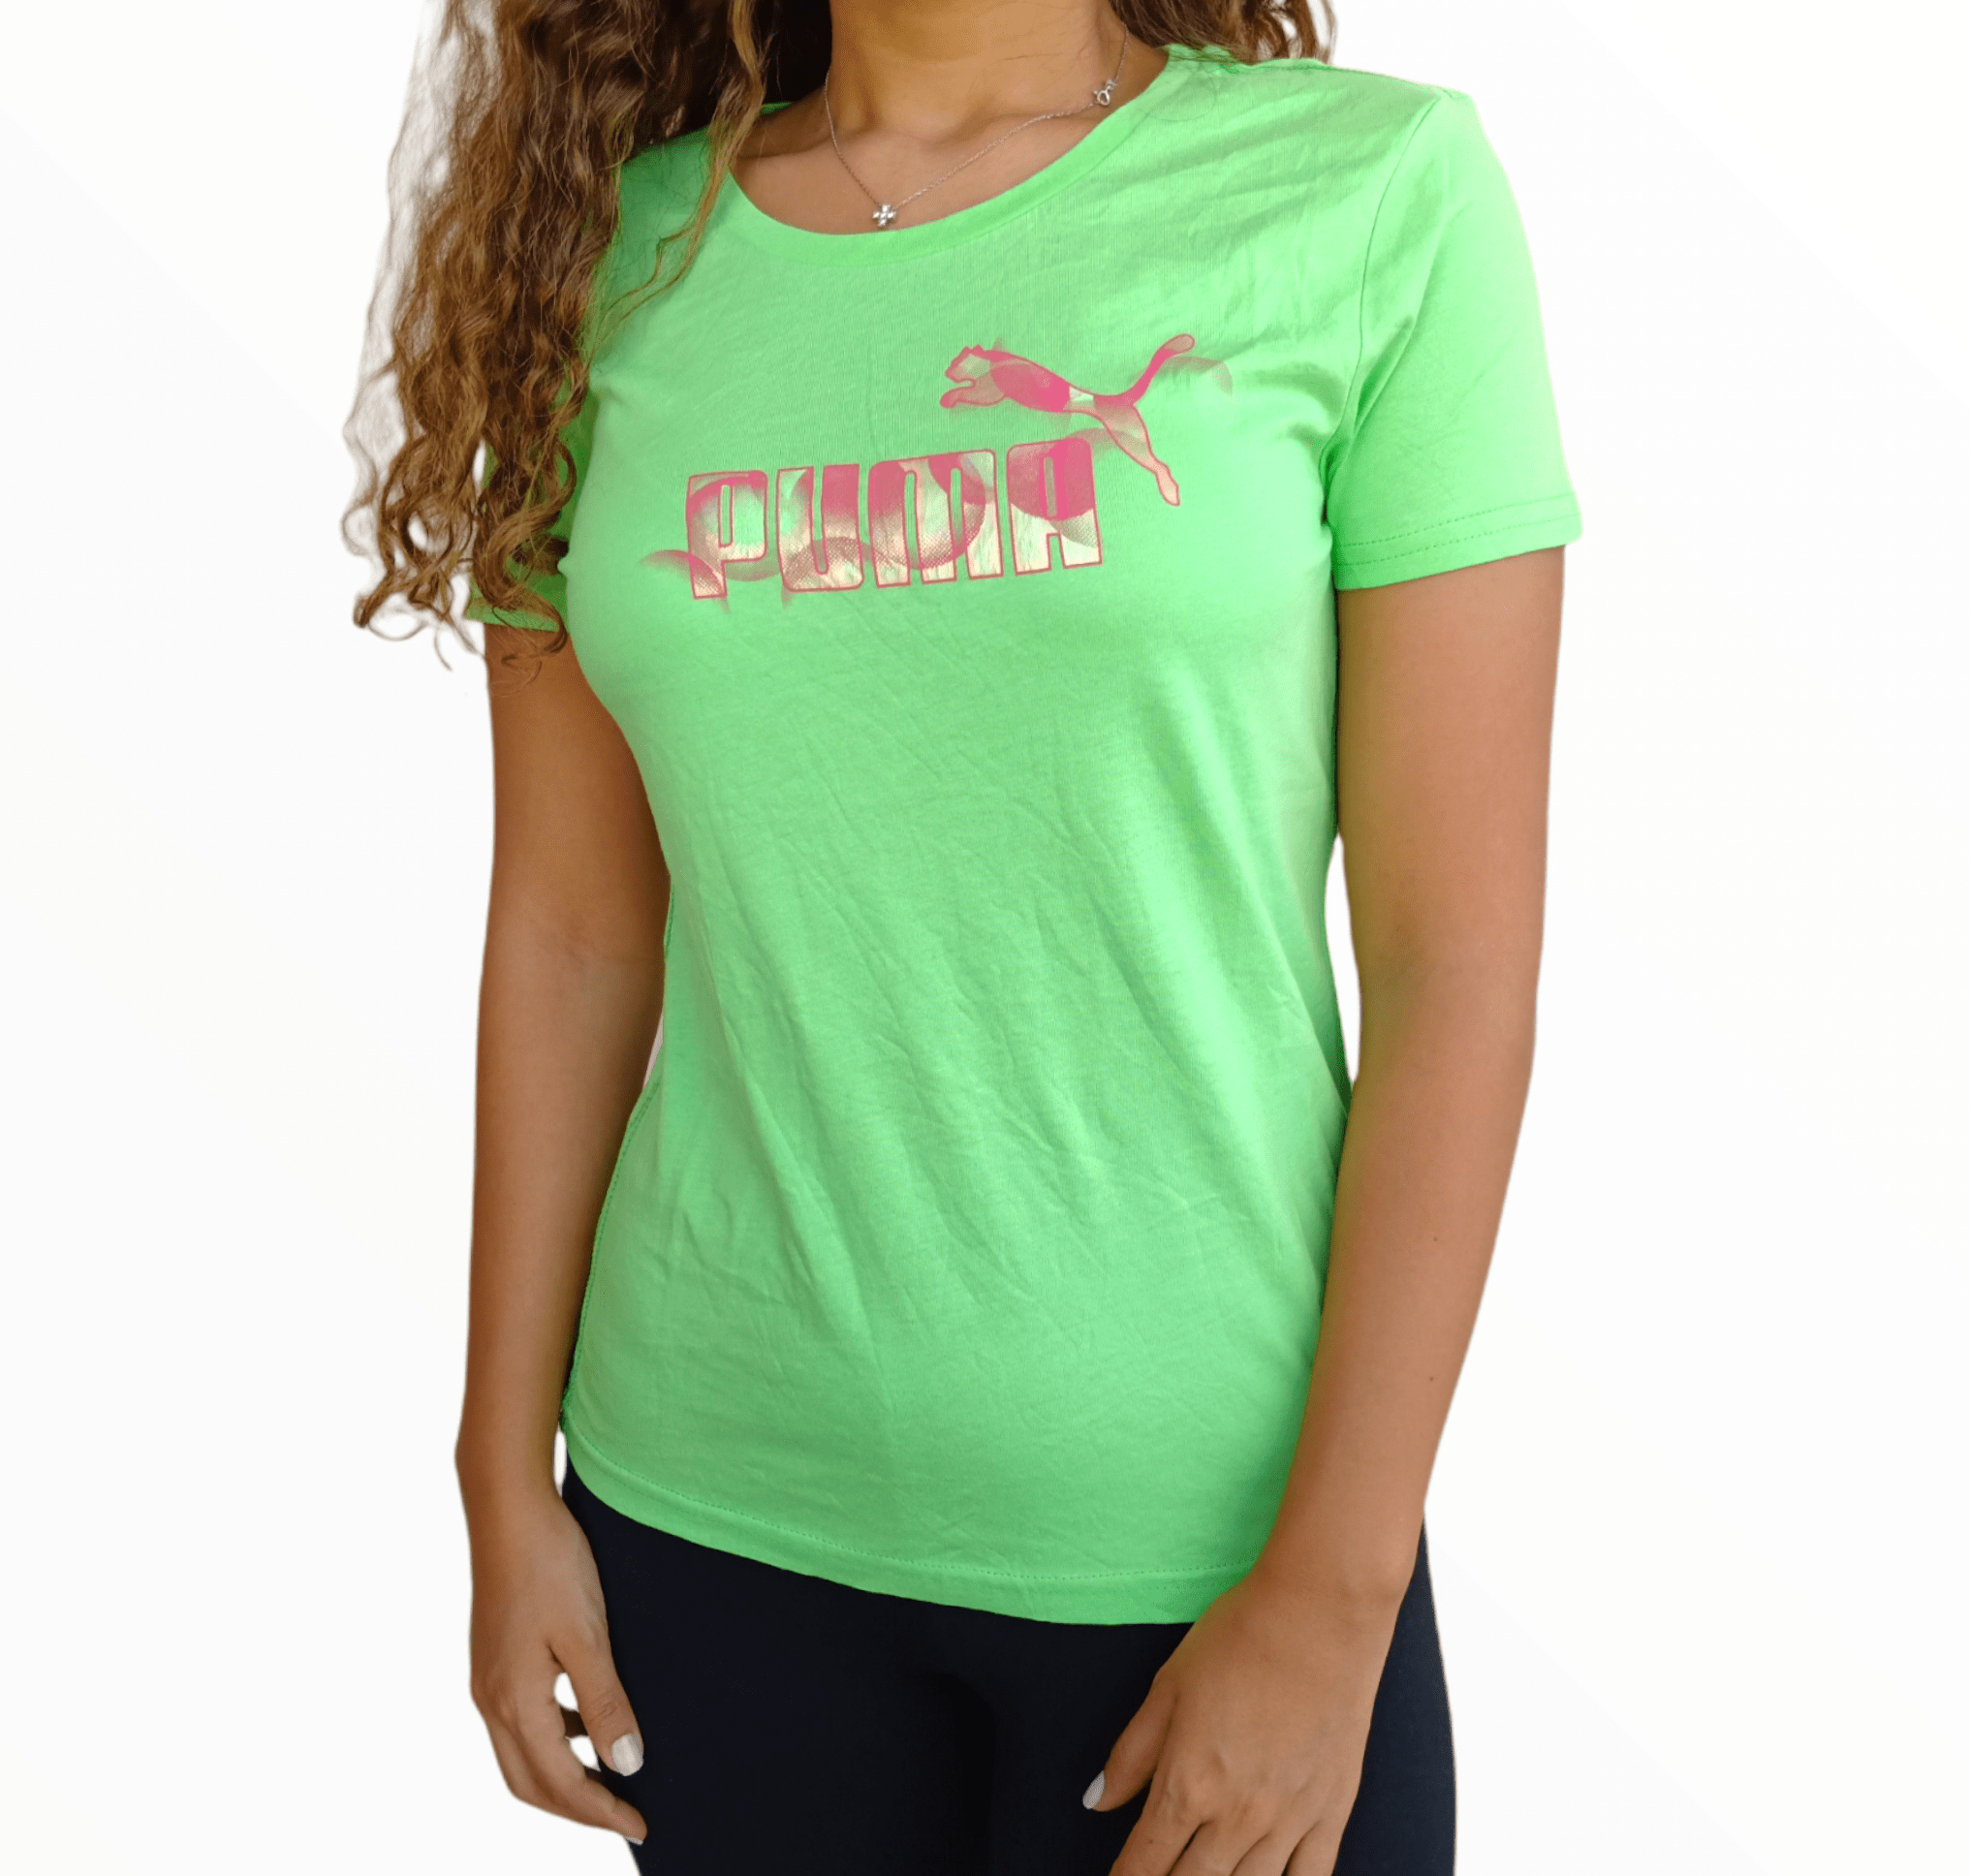 ElOutlet Women T-Shirt Green Sports T-shirt